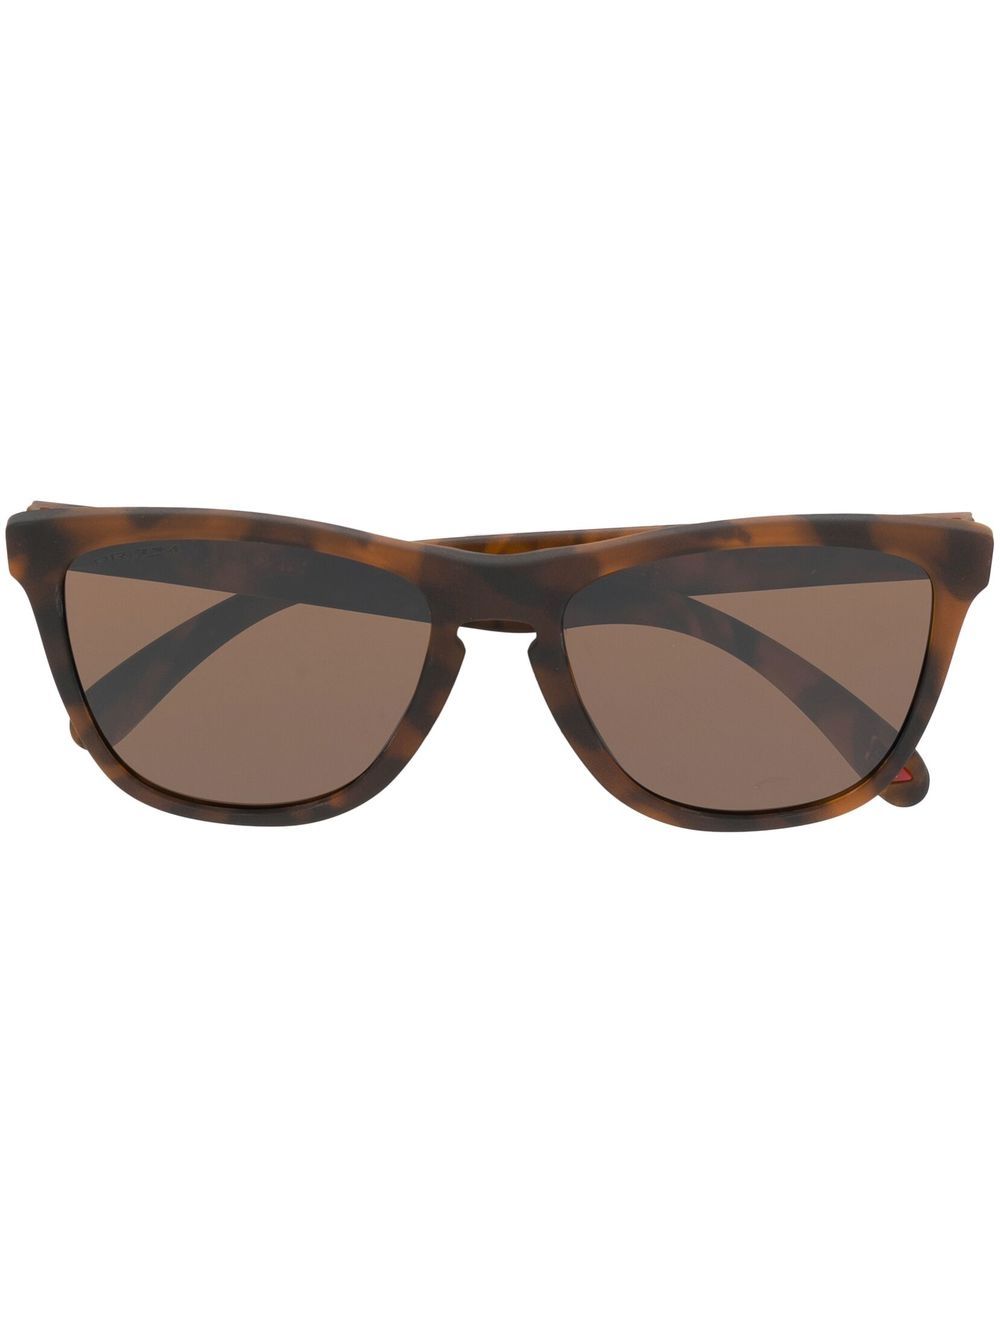 Tortoiseshell square-frame sunglasses